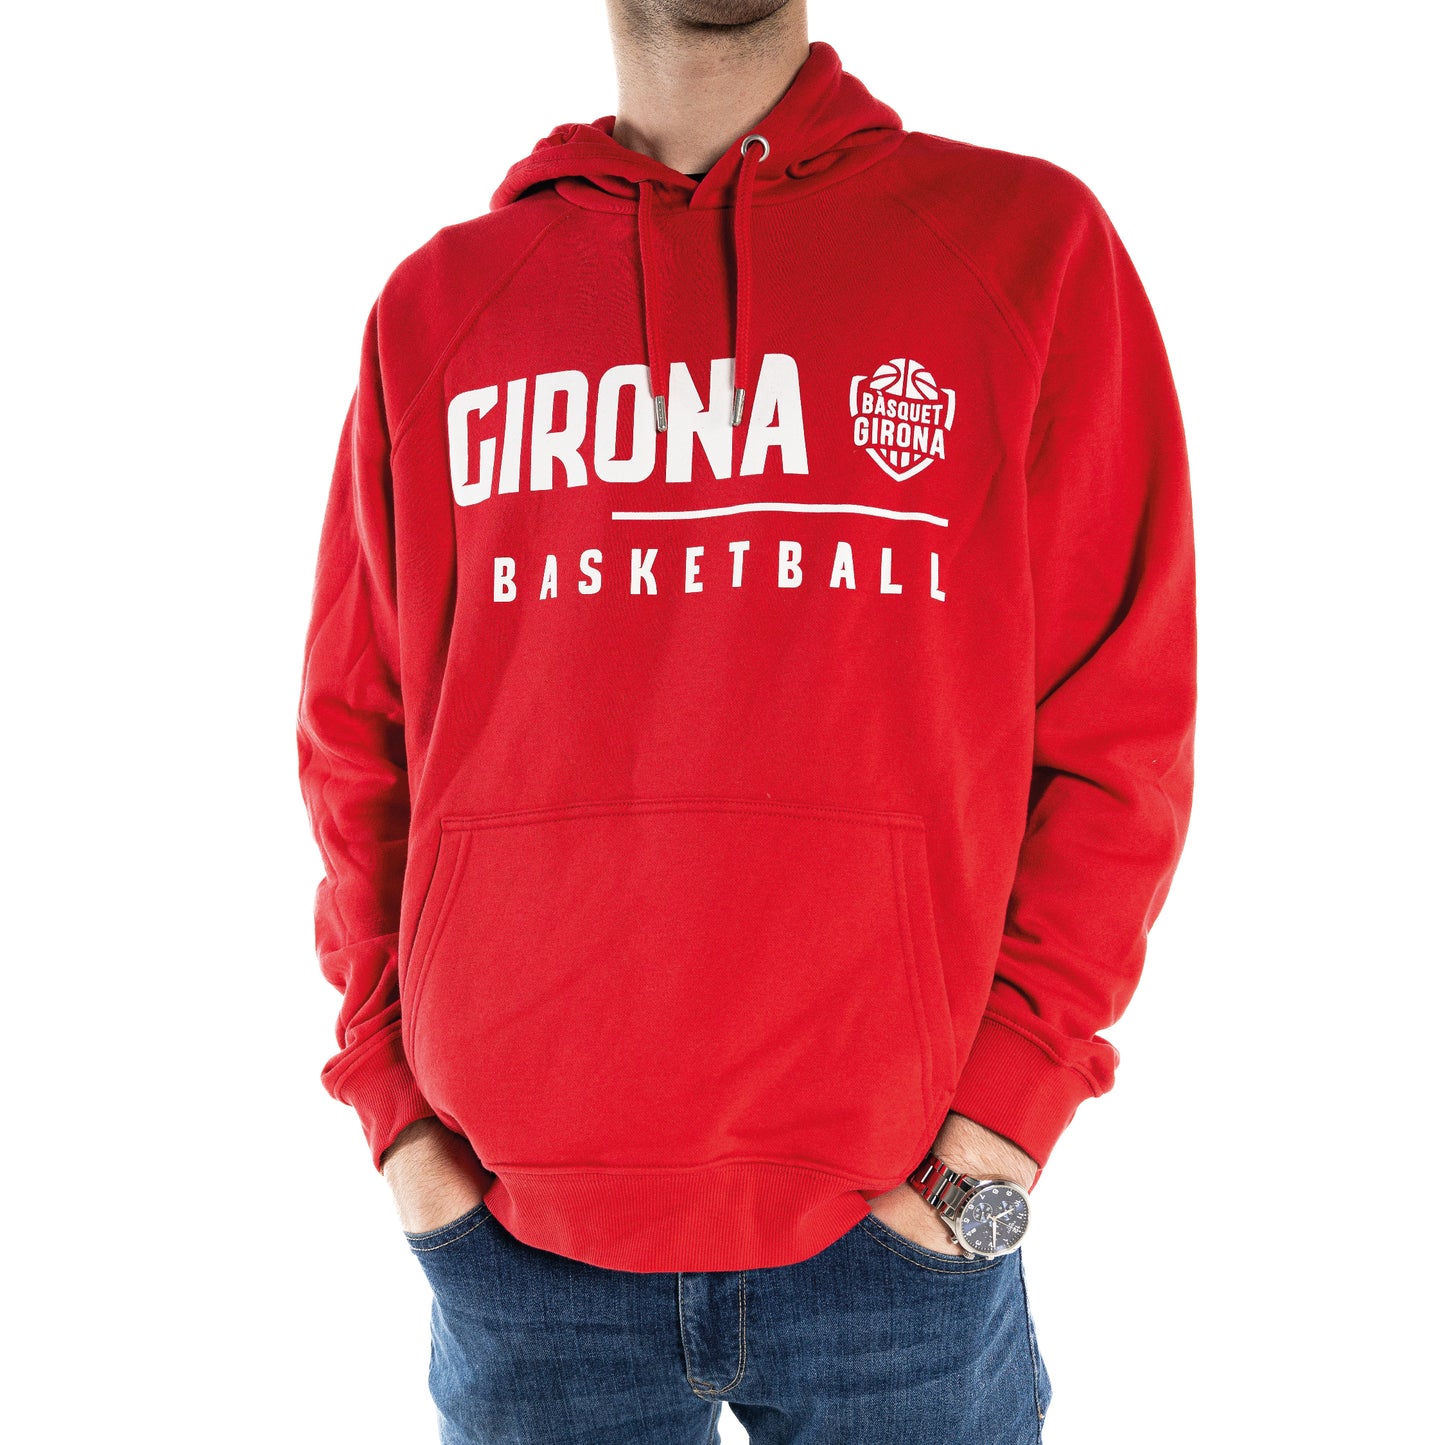 Girona Basketball Sweatshirt Red 22/23 Adult